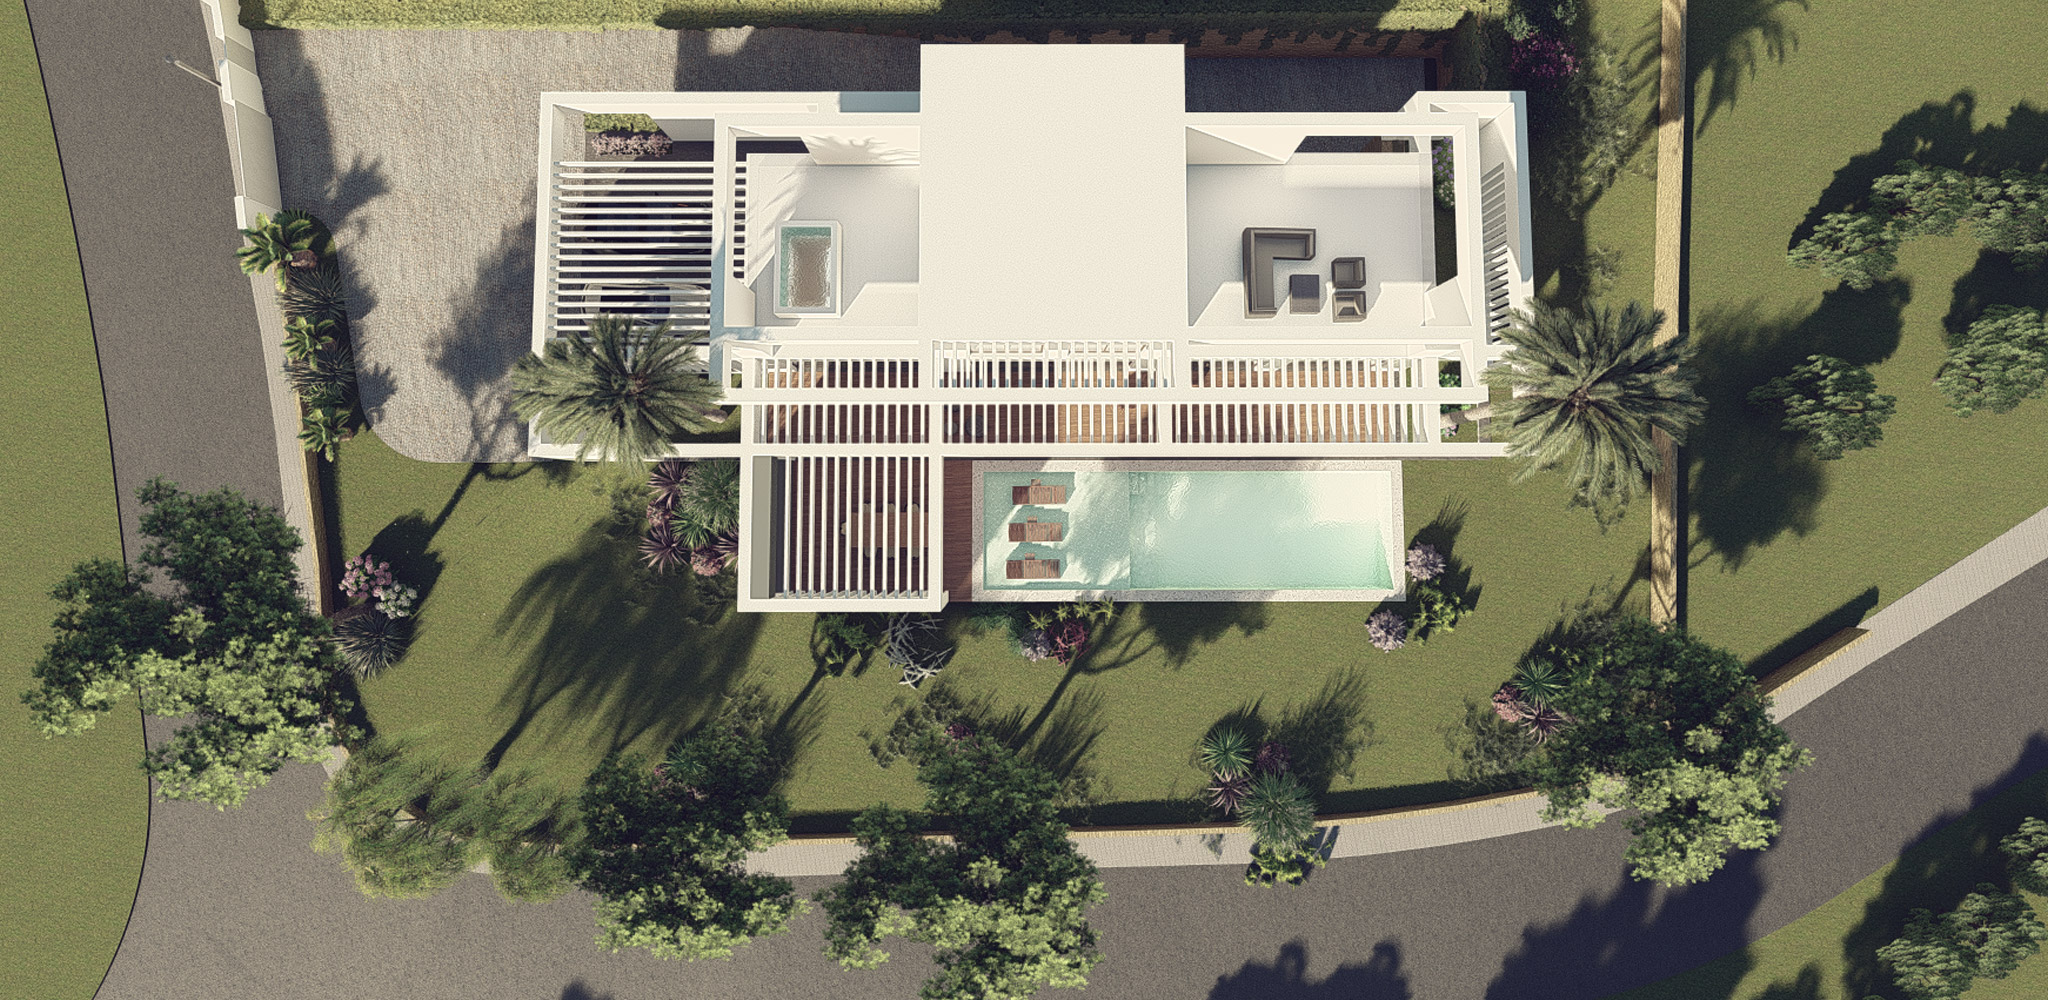 Casa Horizontal by Bespoke Architects